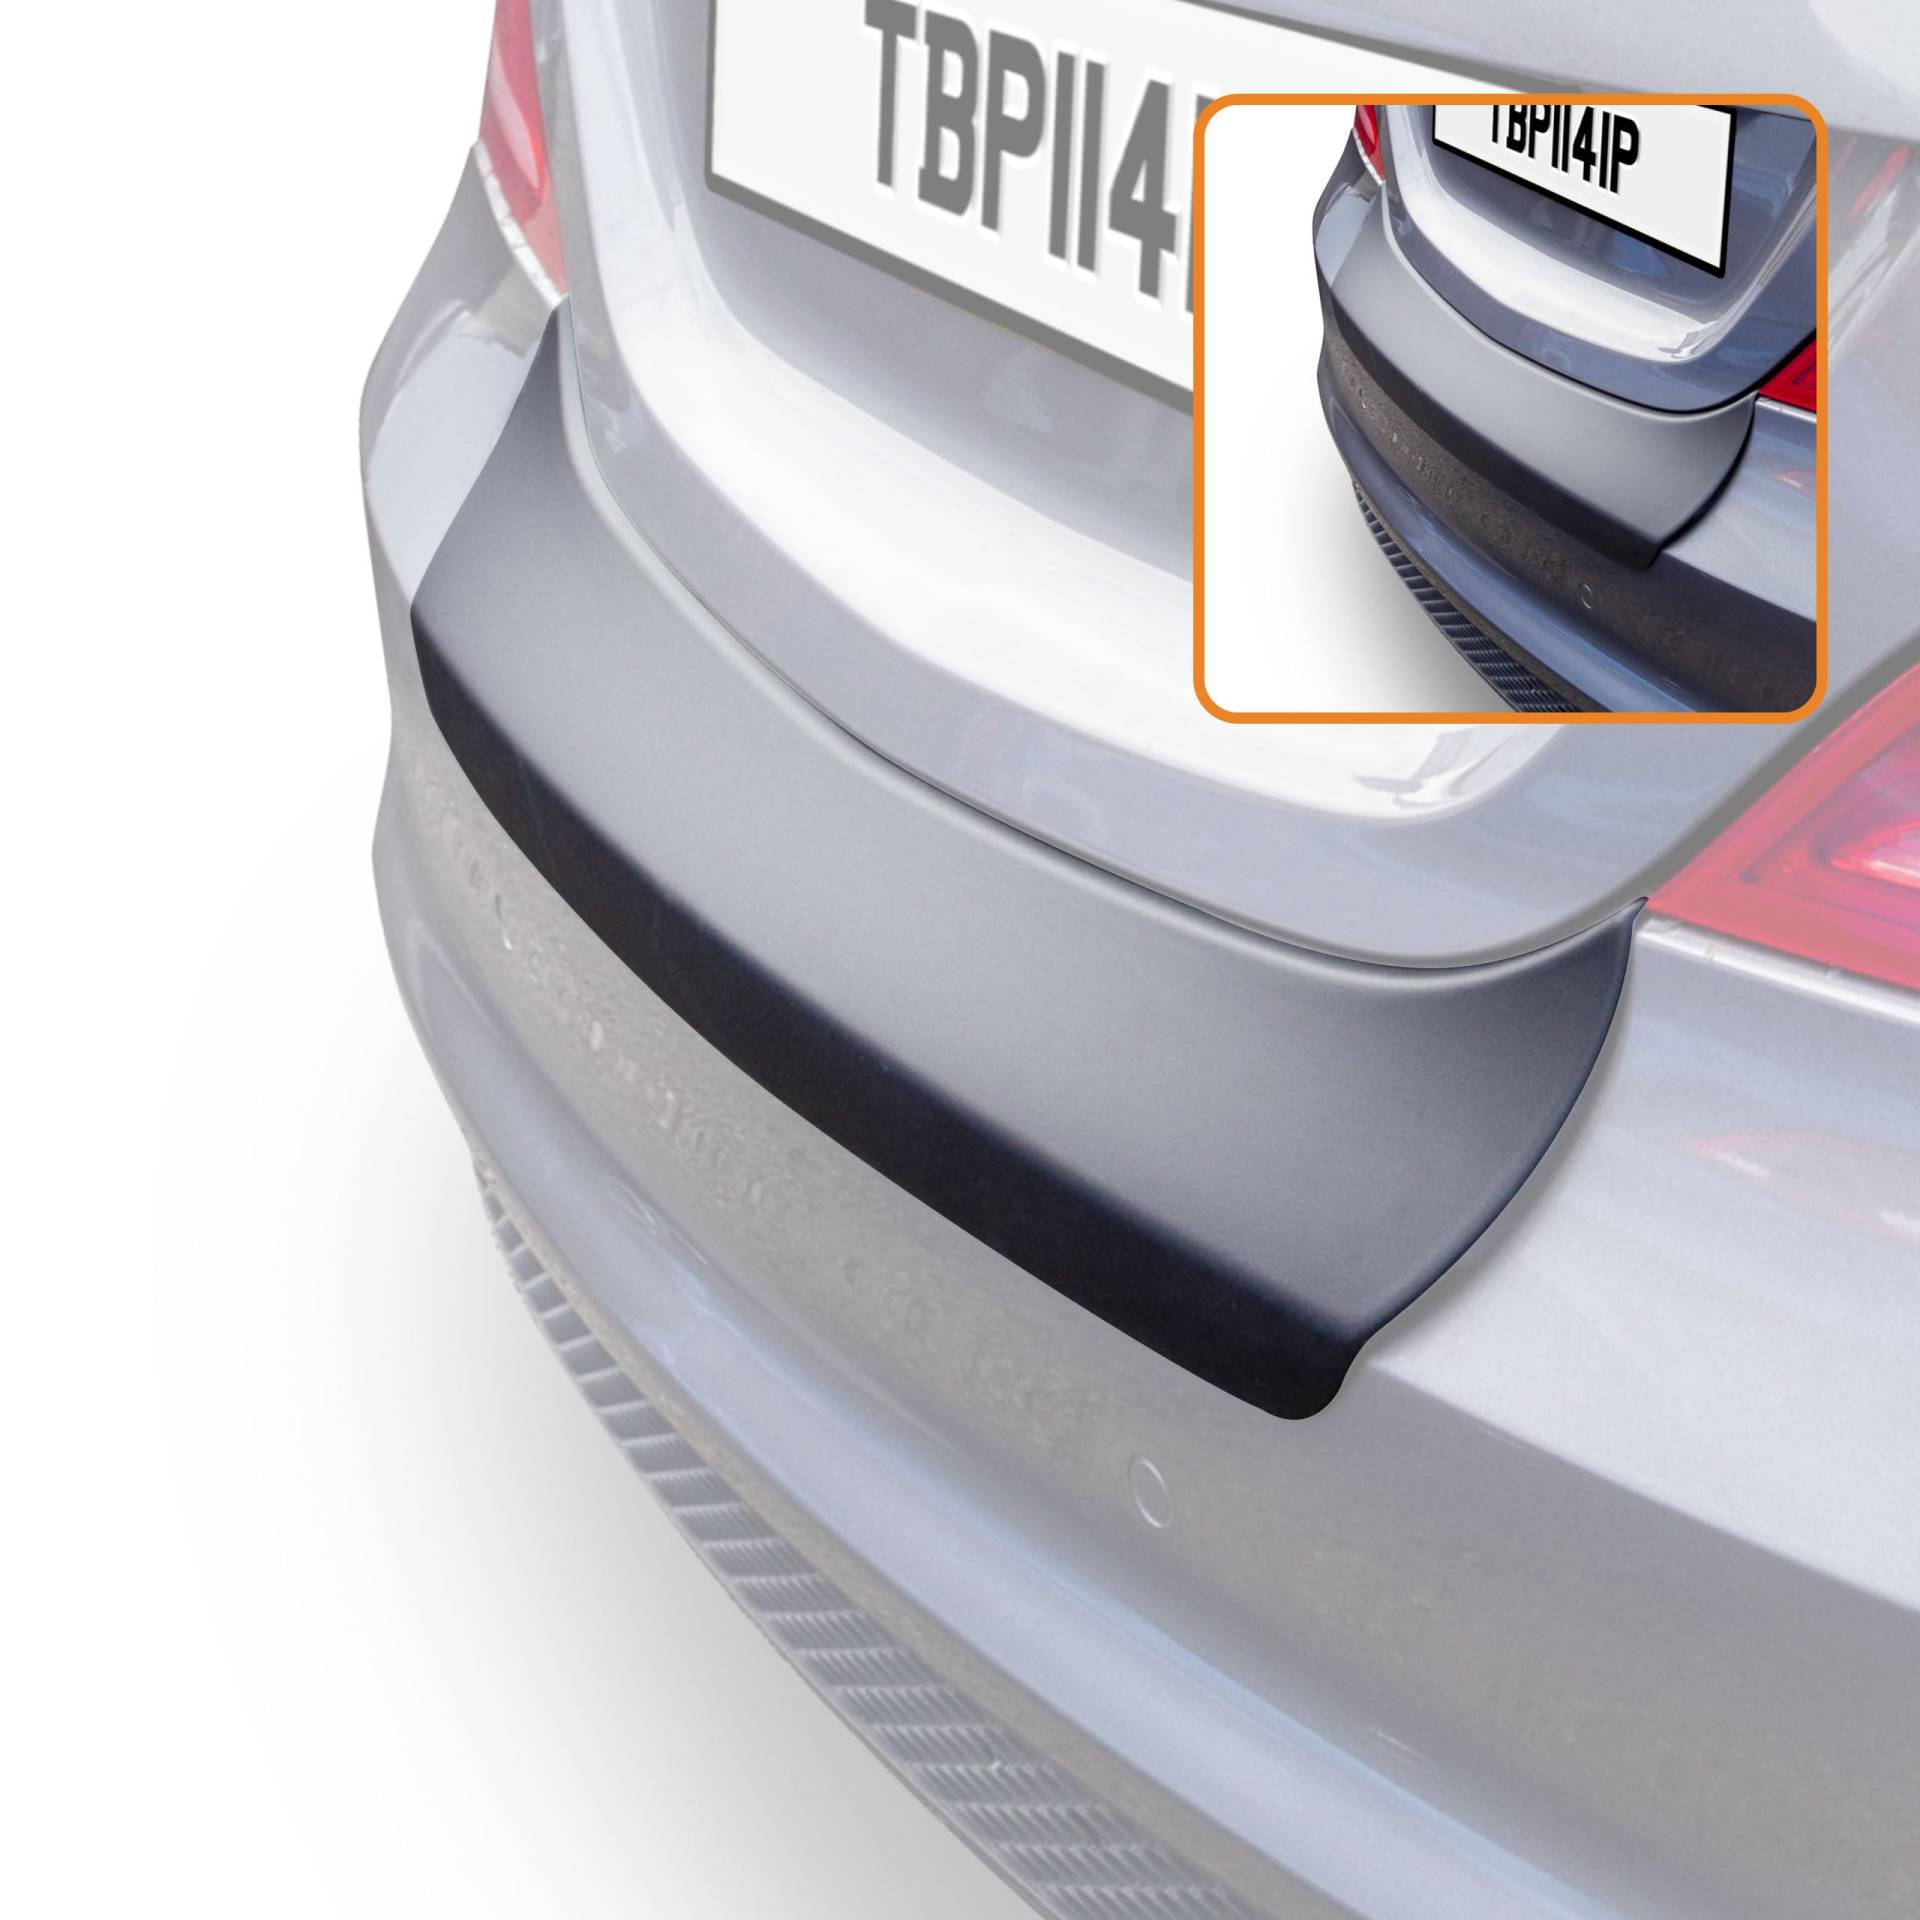 Travall Protector Stoßstangenschutz Kompatibel Mit Mercedes-Benz CLA Shooting Brake 2015-2019 TBP1141P – Maßgeschneiderter Ladekantenschutz aus Hochwertigem ABS-Kunststoff von Travall